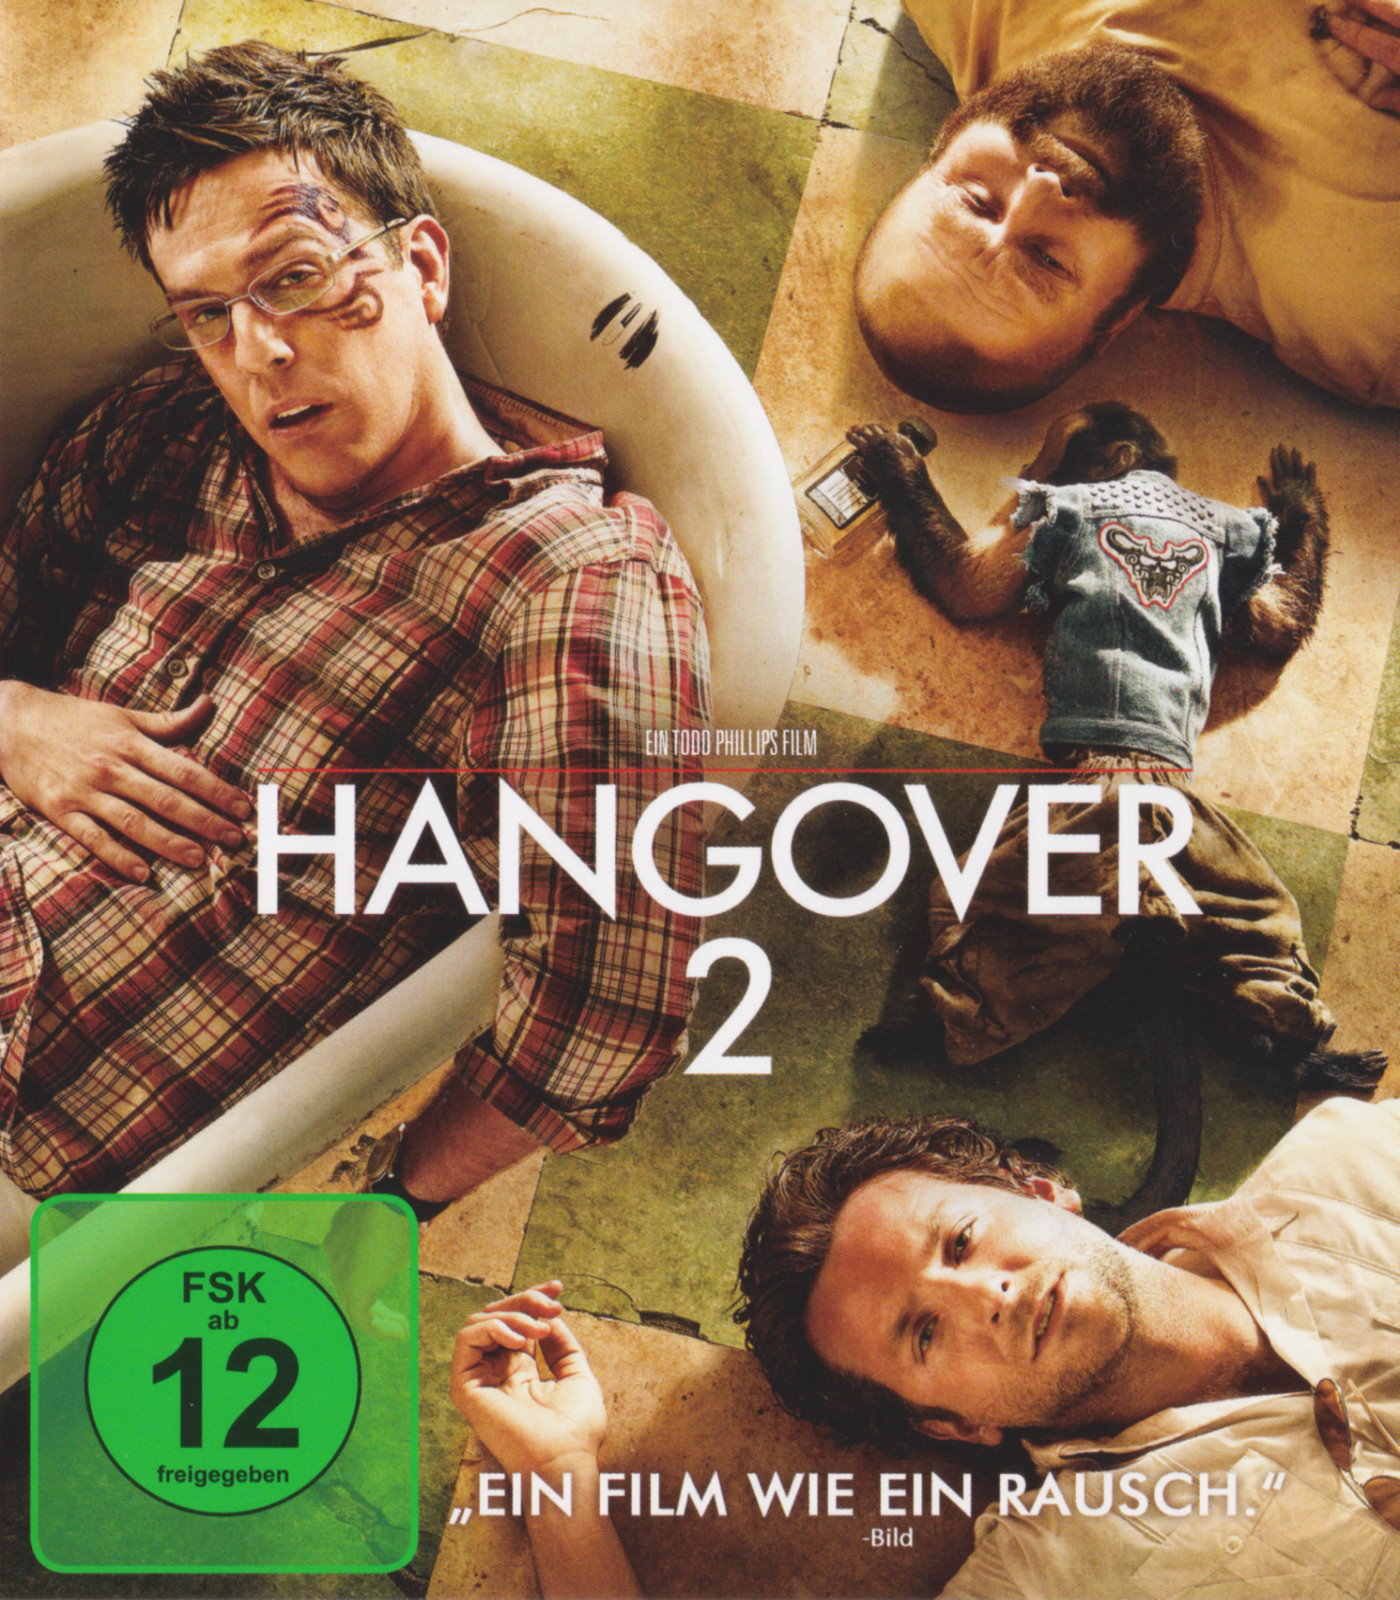 Cover - Hangover 2.jpg